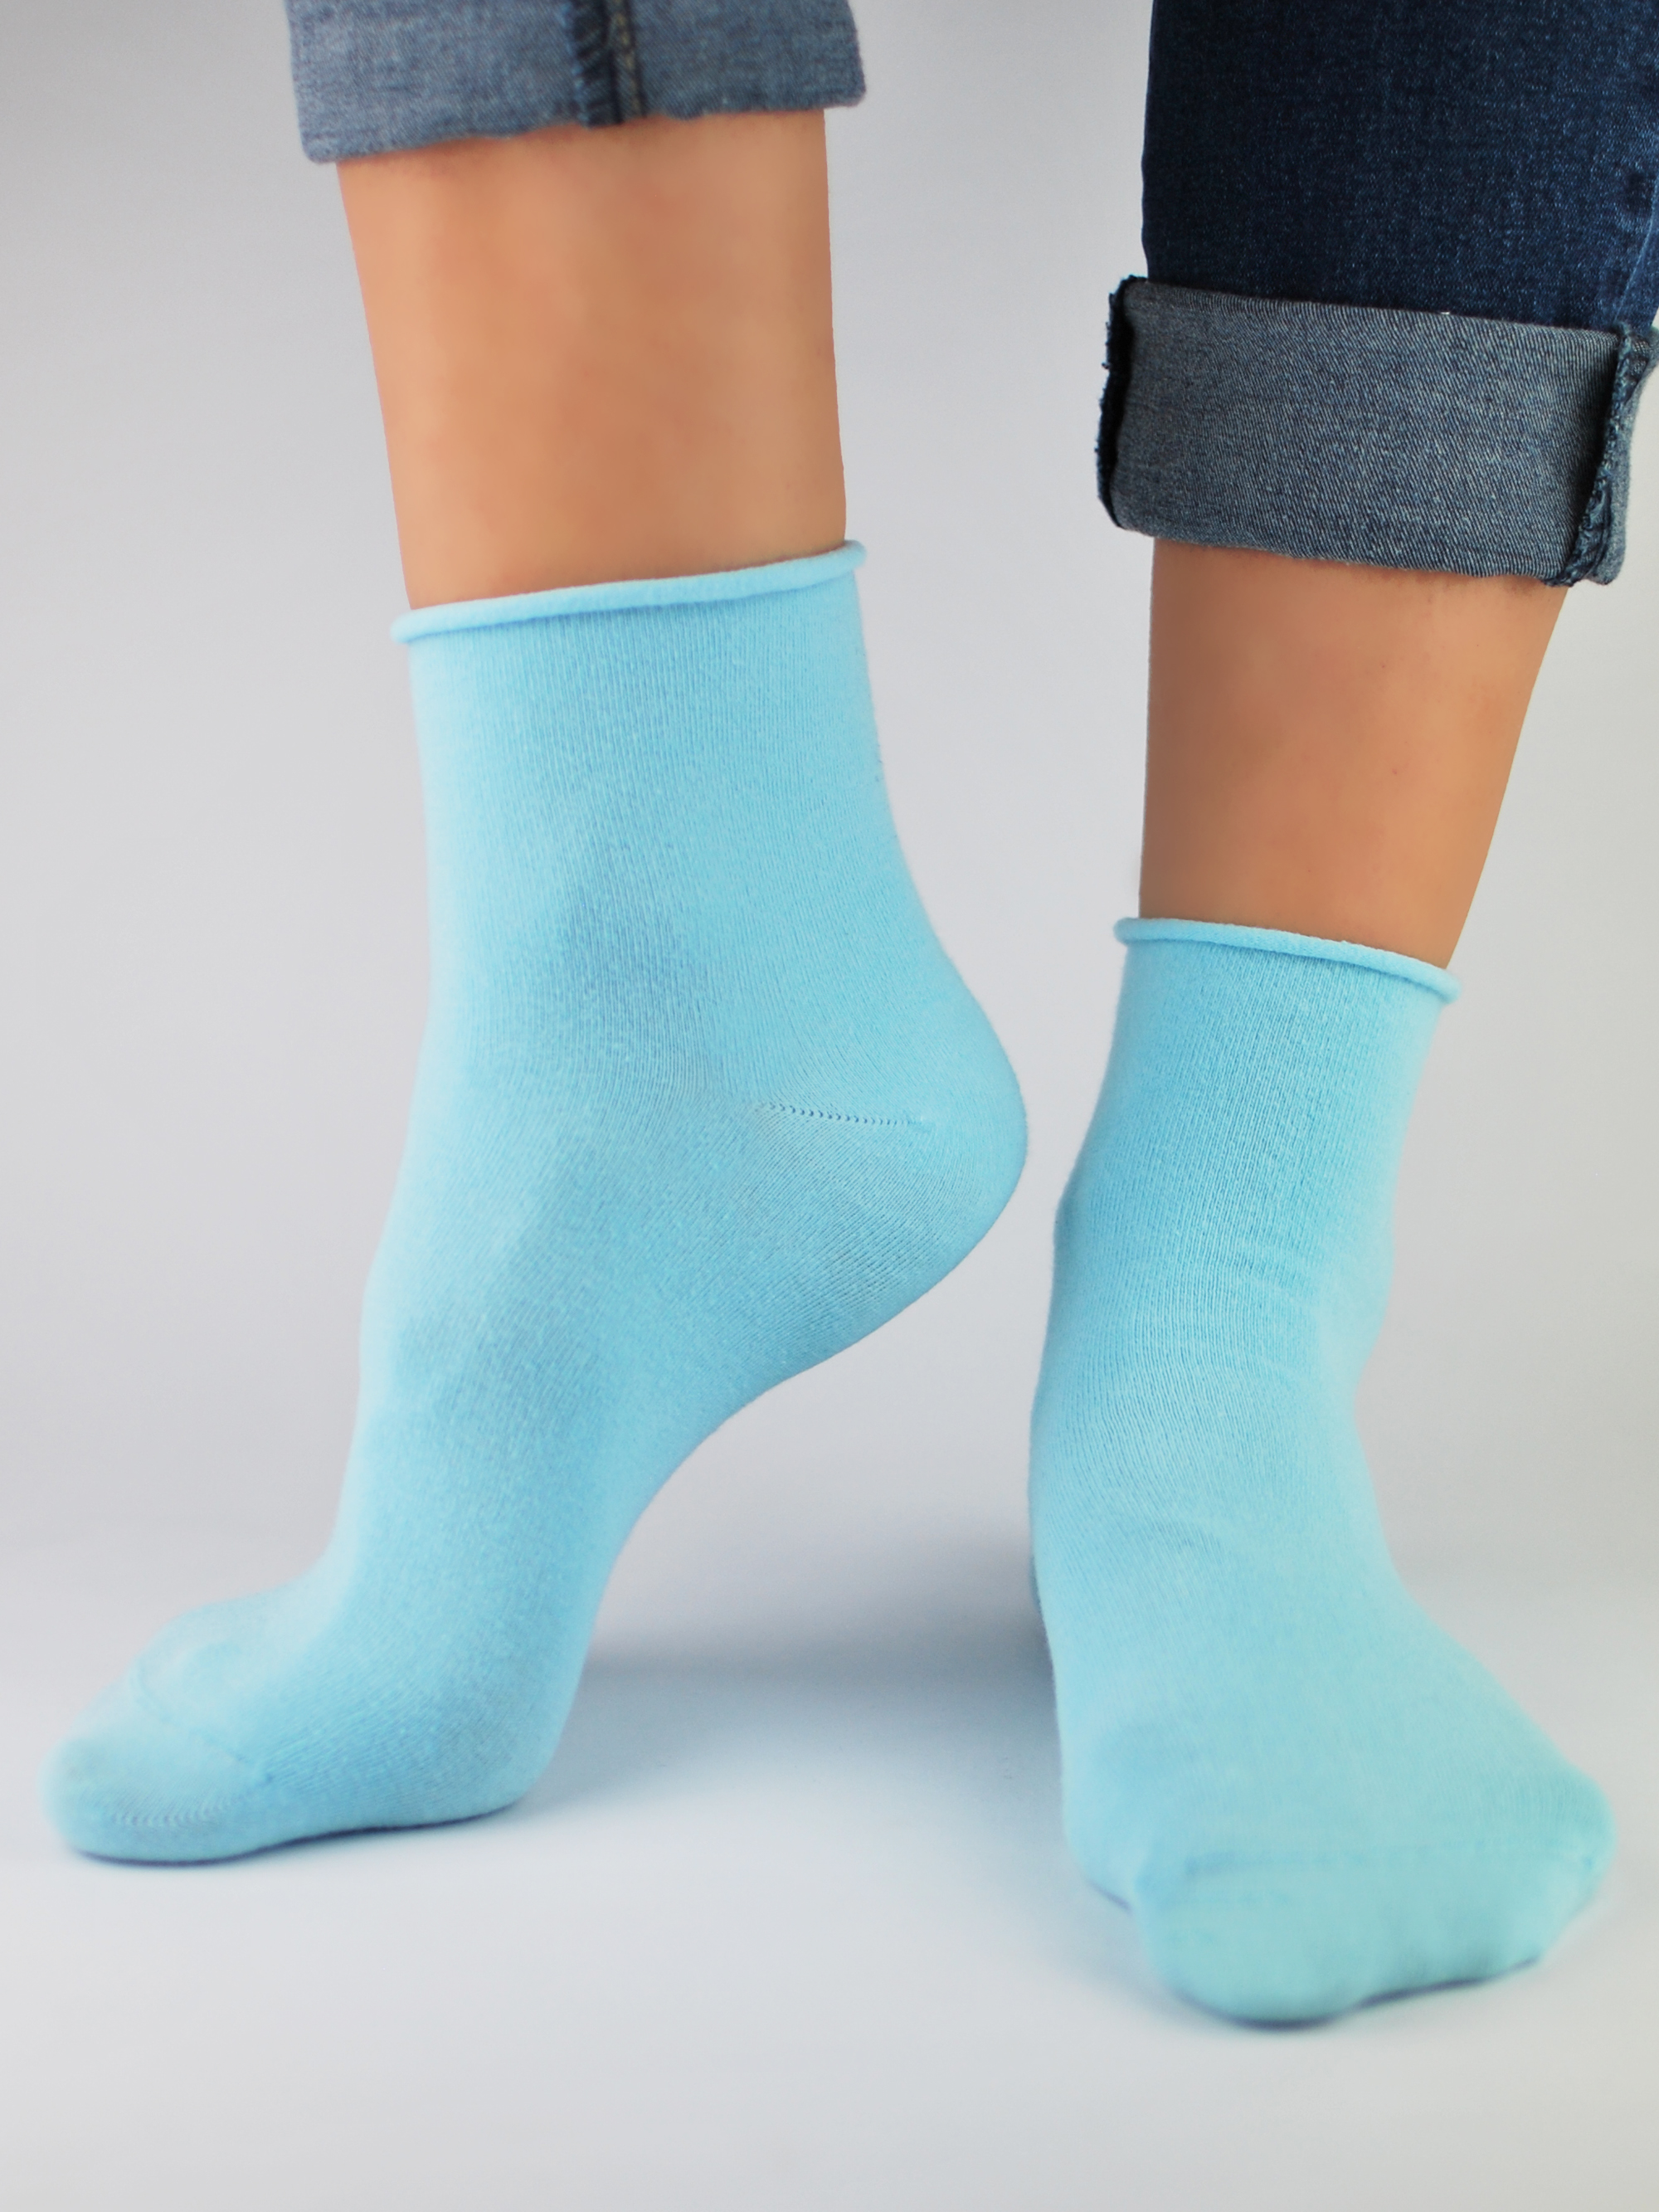 NOVITI Woman's Socks SB014-W-08